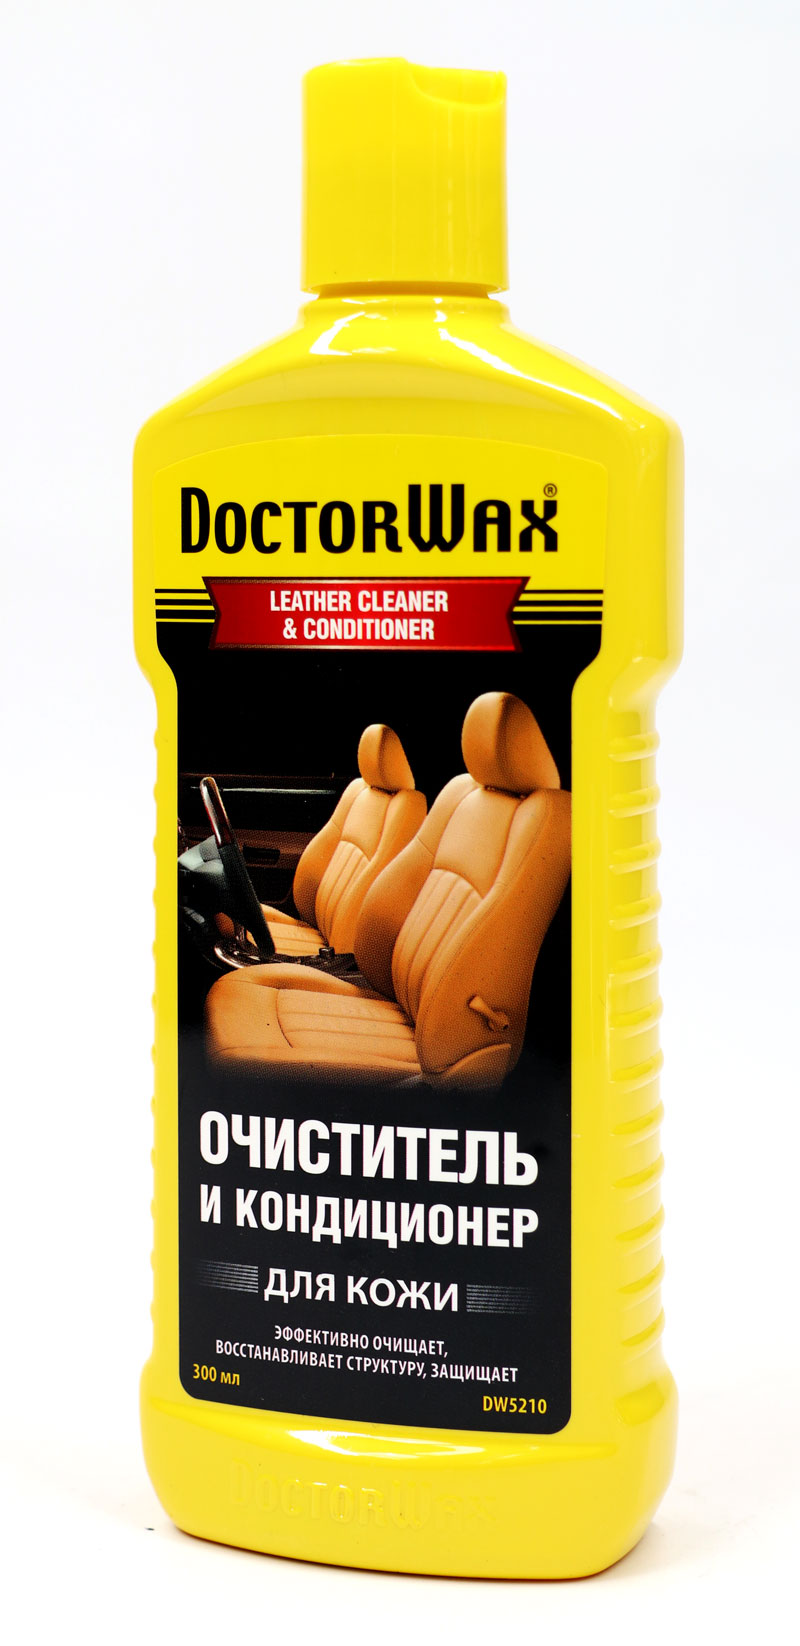 купить Очиститель-кондиционер для кожи DOCTOR WAX DW5210 (300 мл) на Рено (Renault) Дачия (Dacia) Логан, МСВ, Дастер, Лоджи.